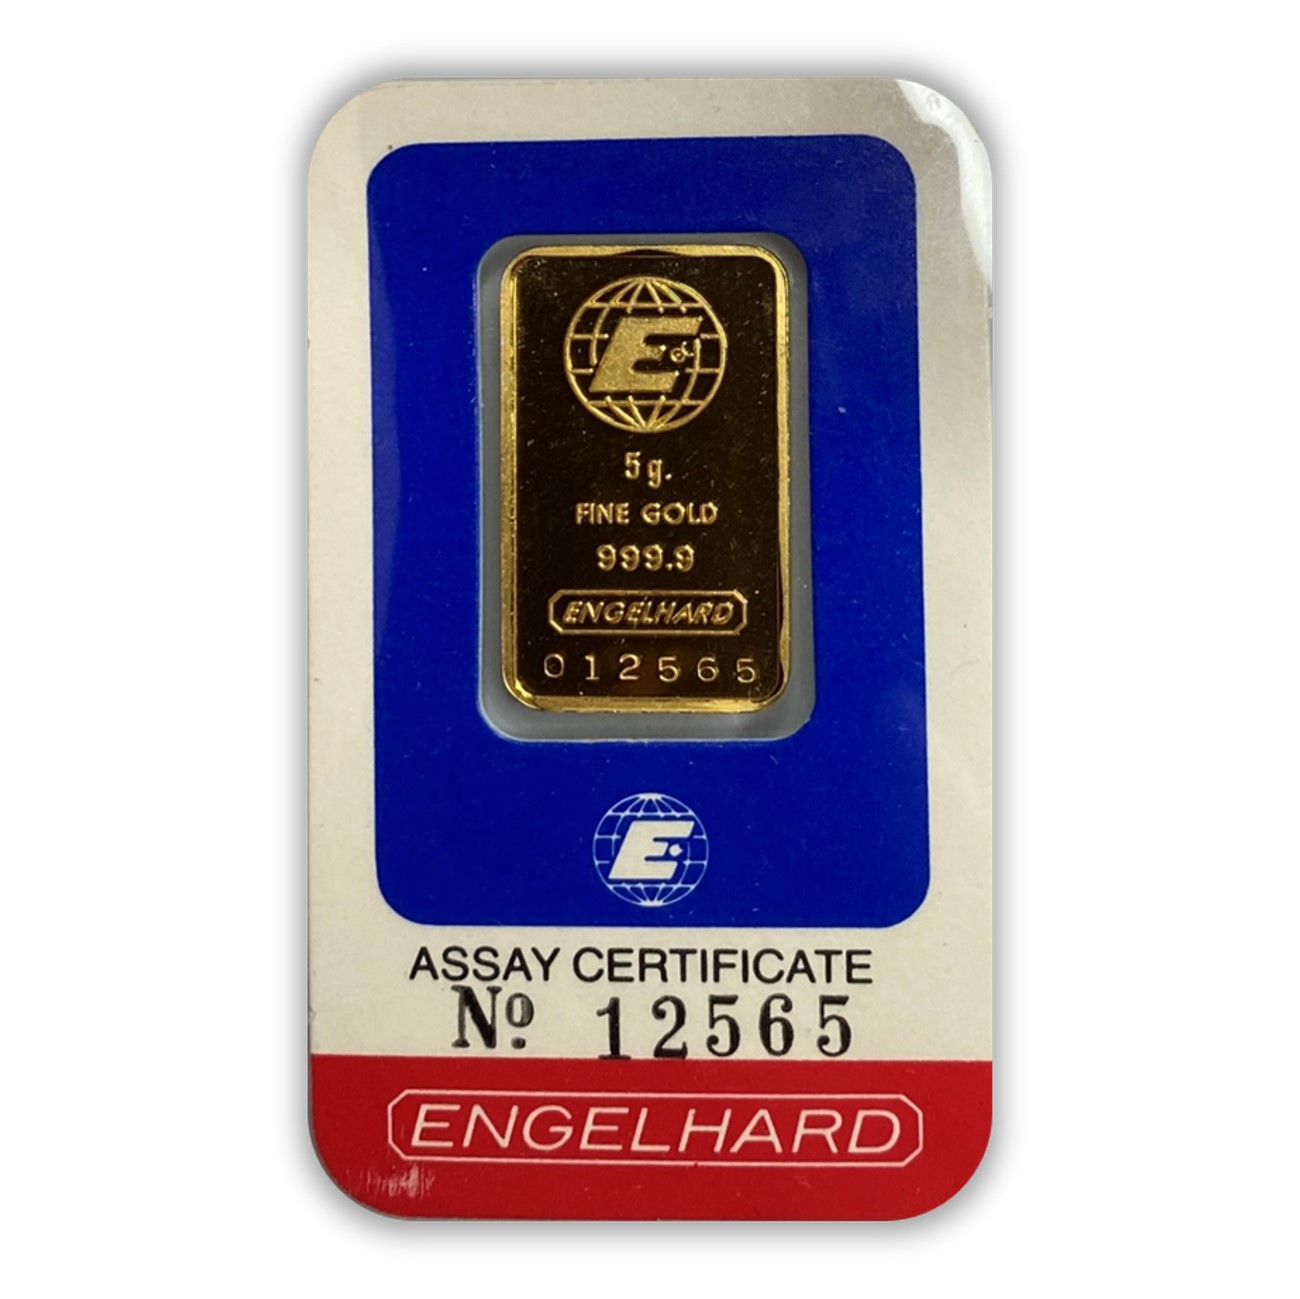 Engelhard 5g Gold Bar - Front Certicard